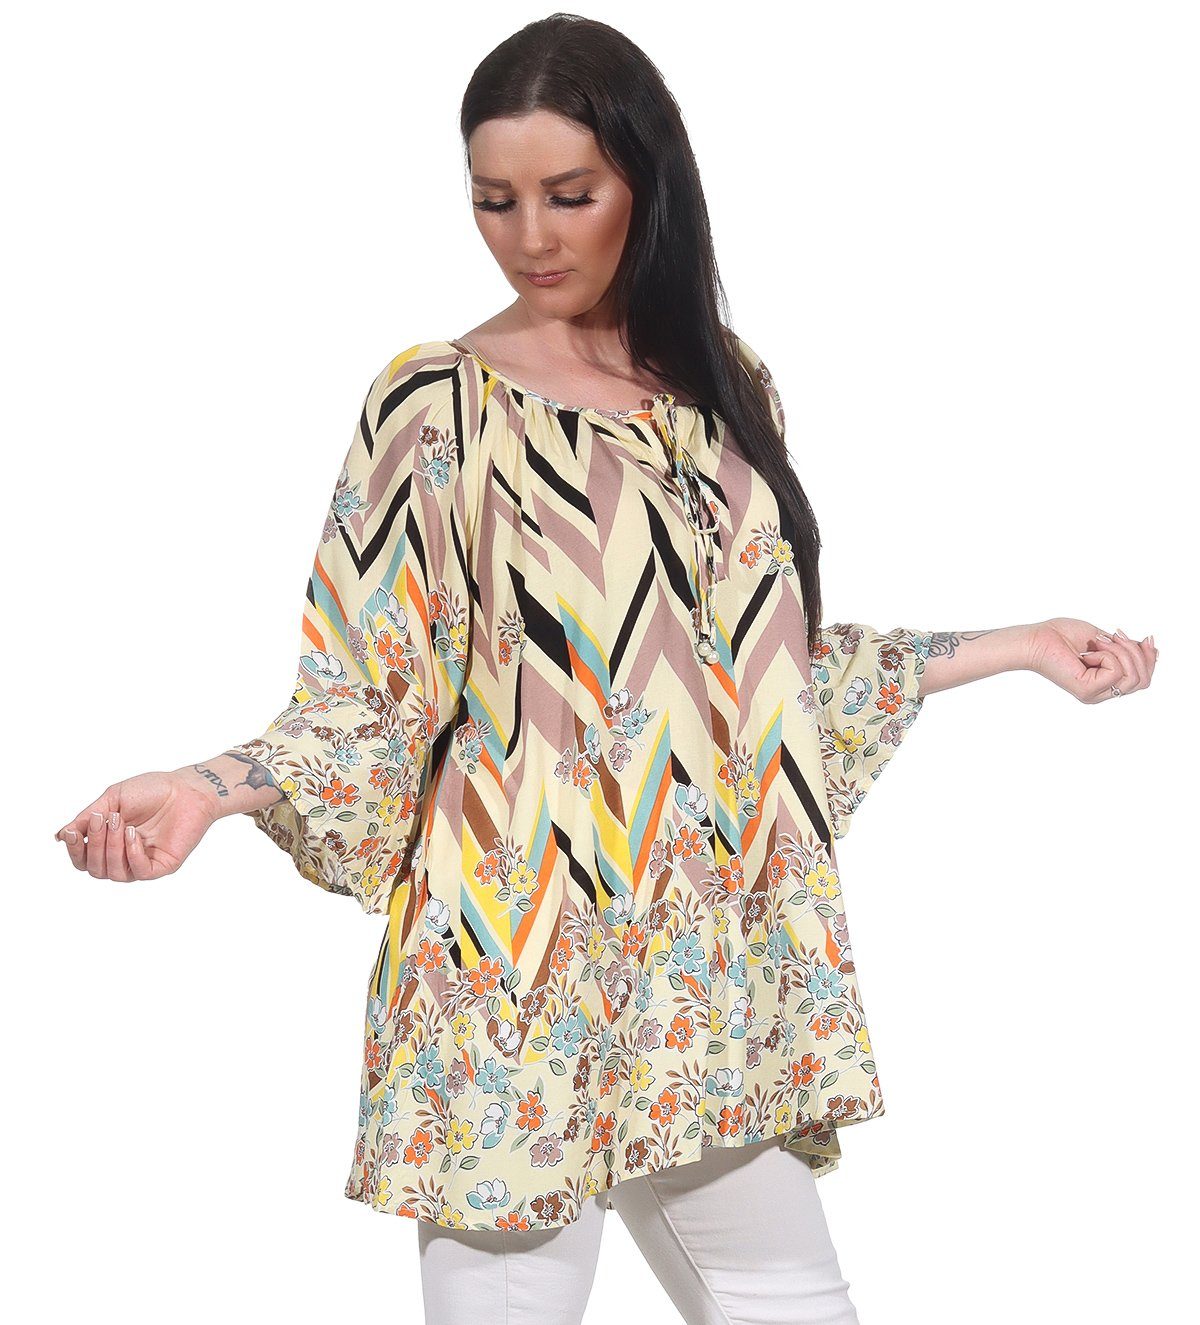 Aurela Damenmode Oversize-Shirt Damen Bluse leichtes Strandshirt sommerliche Tunika angenehmes Baumwollmaterial, Gesamtlänge: 76 - 78cm Gelb